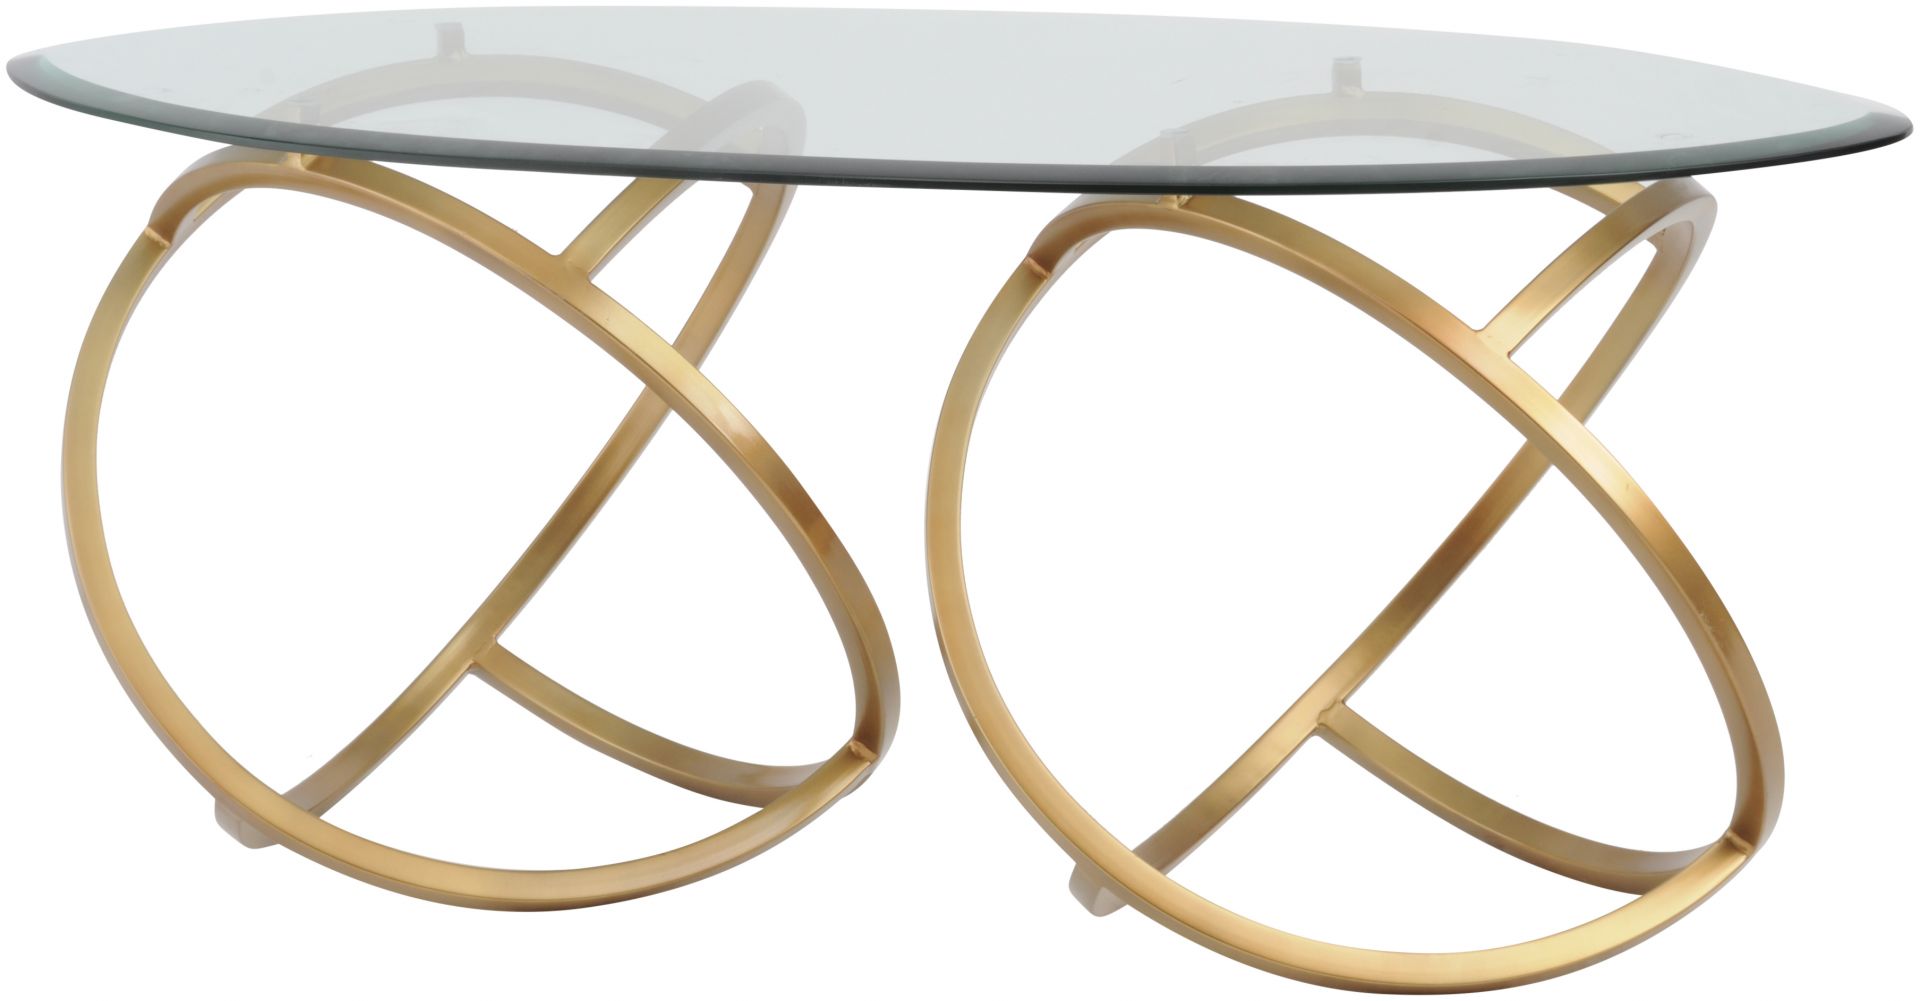 Elegancki owalny stolik kawowy o niebanalnym kształcie. Świetnie sprawdzi się jako mocny akcent w salonie. Fot. Arsanti